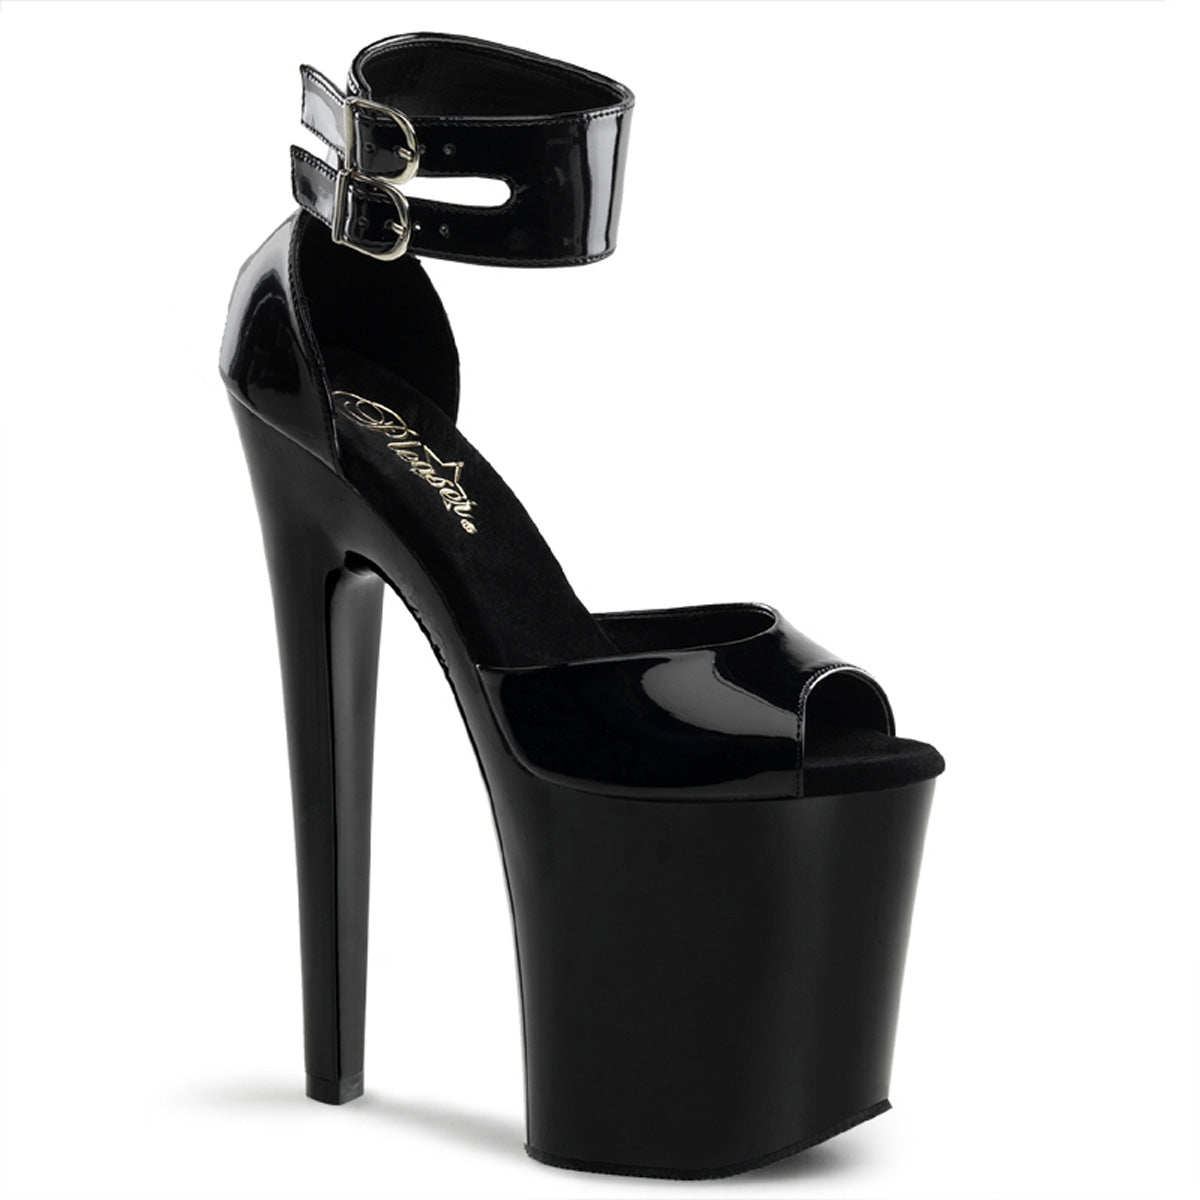 XTREME-875 8" Heel Black Patent Pole Dancer Platform Shoes Shoes